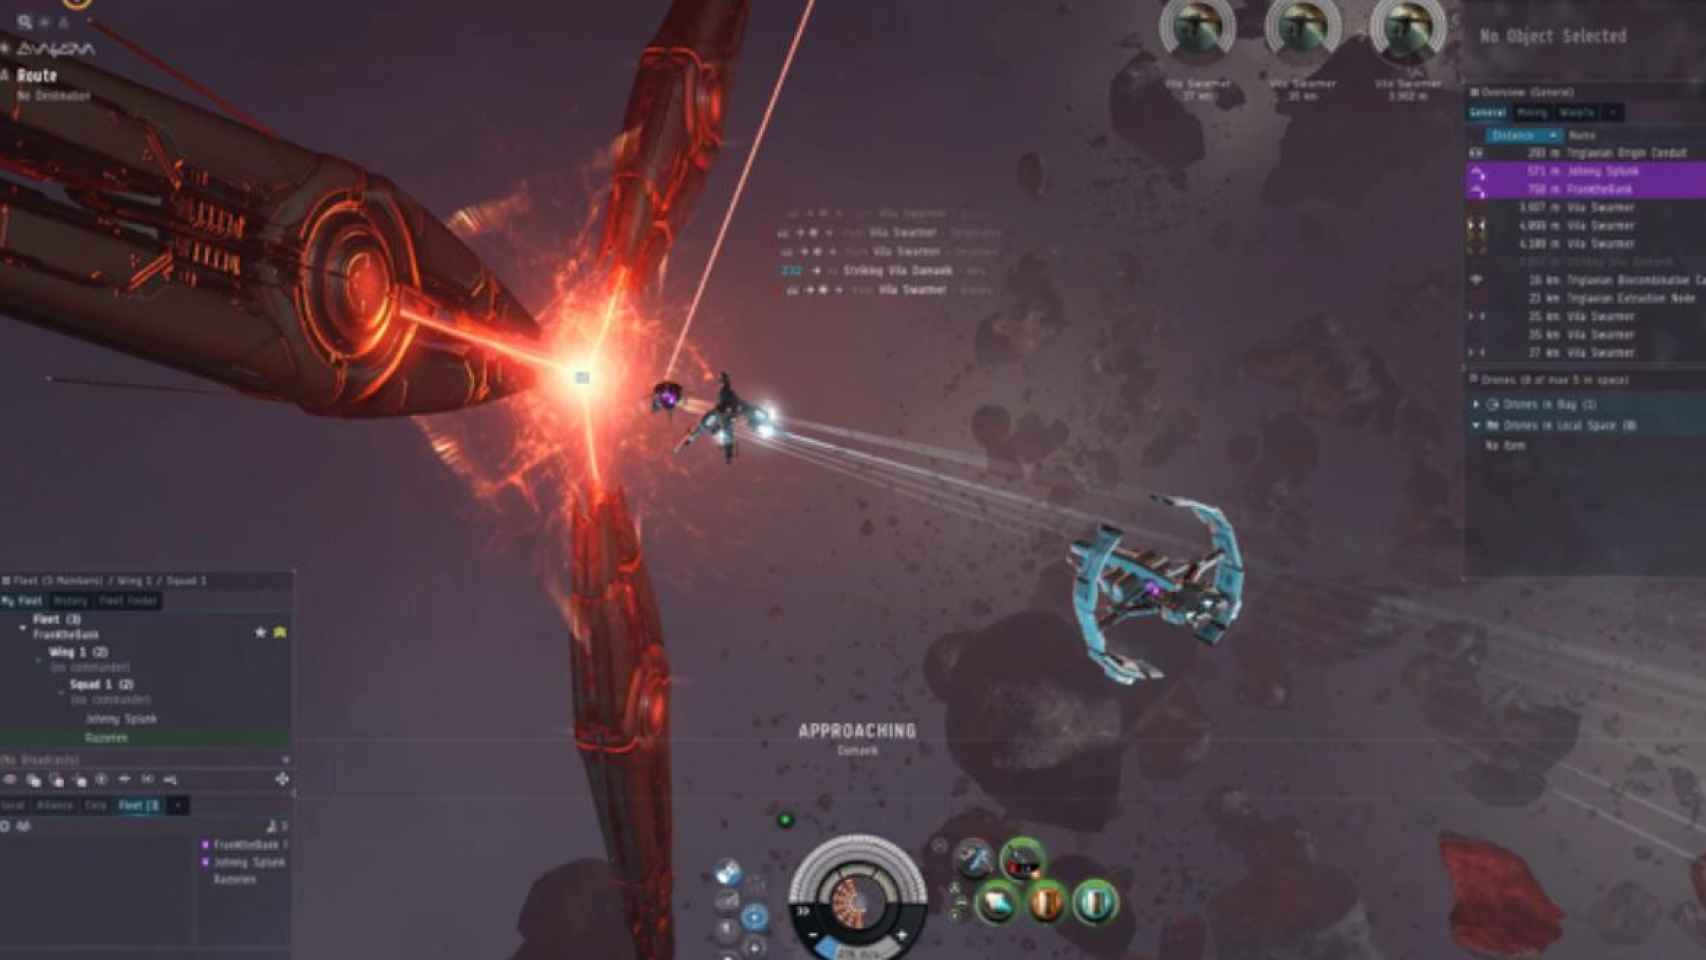 Imagen del juego multijugador en línea 'Eve Online' / CCP Games